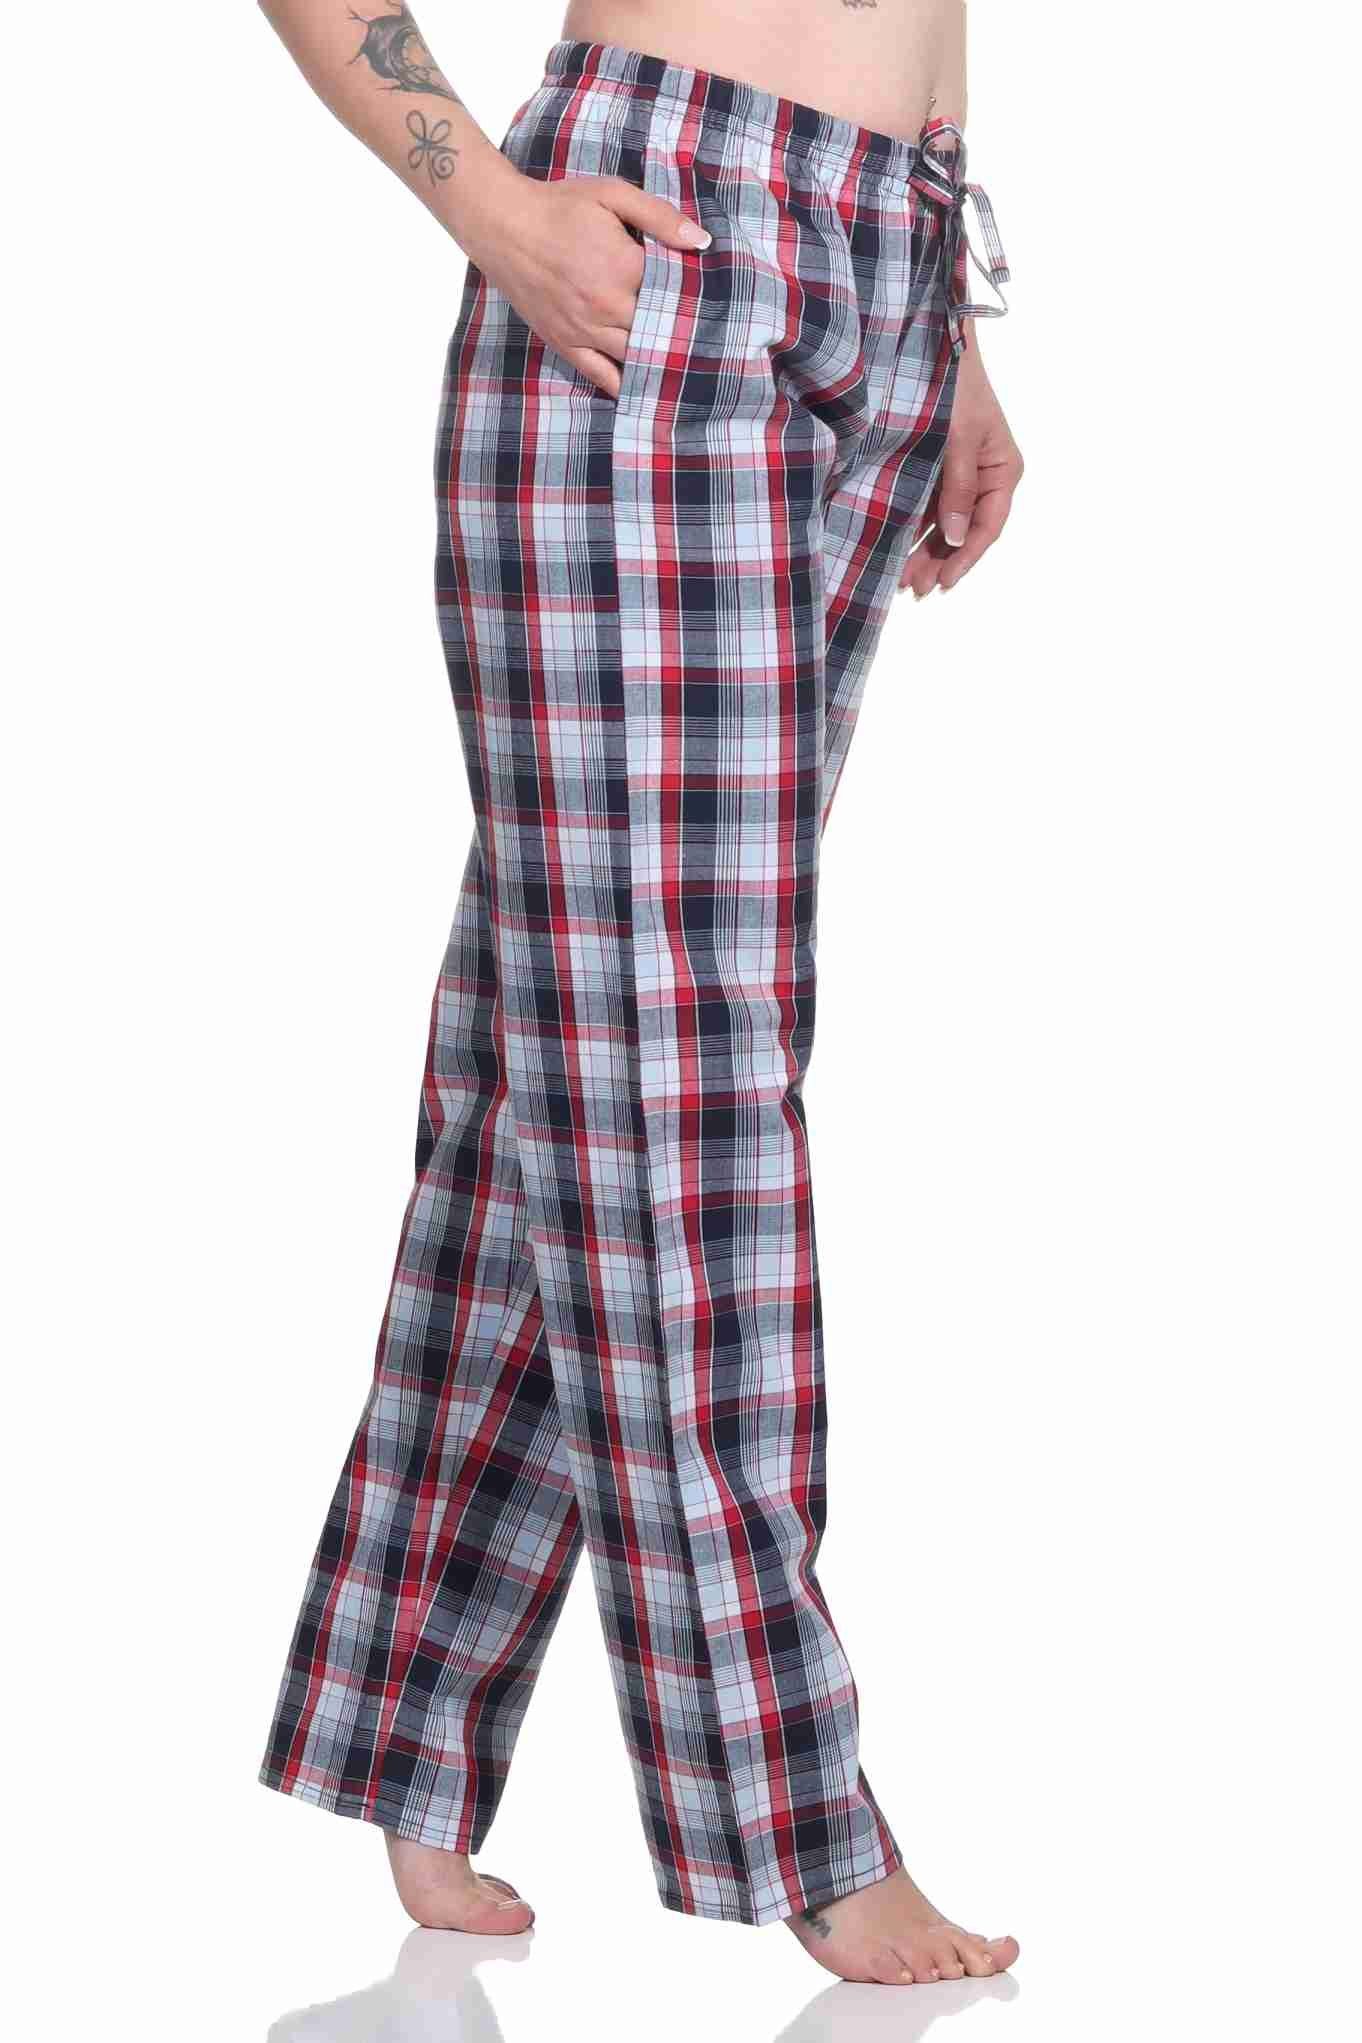 aus zum – ideal Pyjama dunkelgrau relaxen gewebt Baumwolle Normann Hose Damen Schlafanzug lang